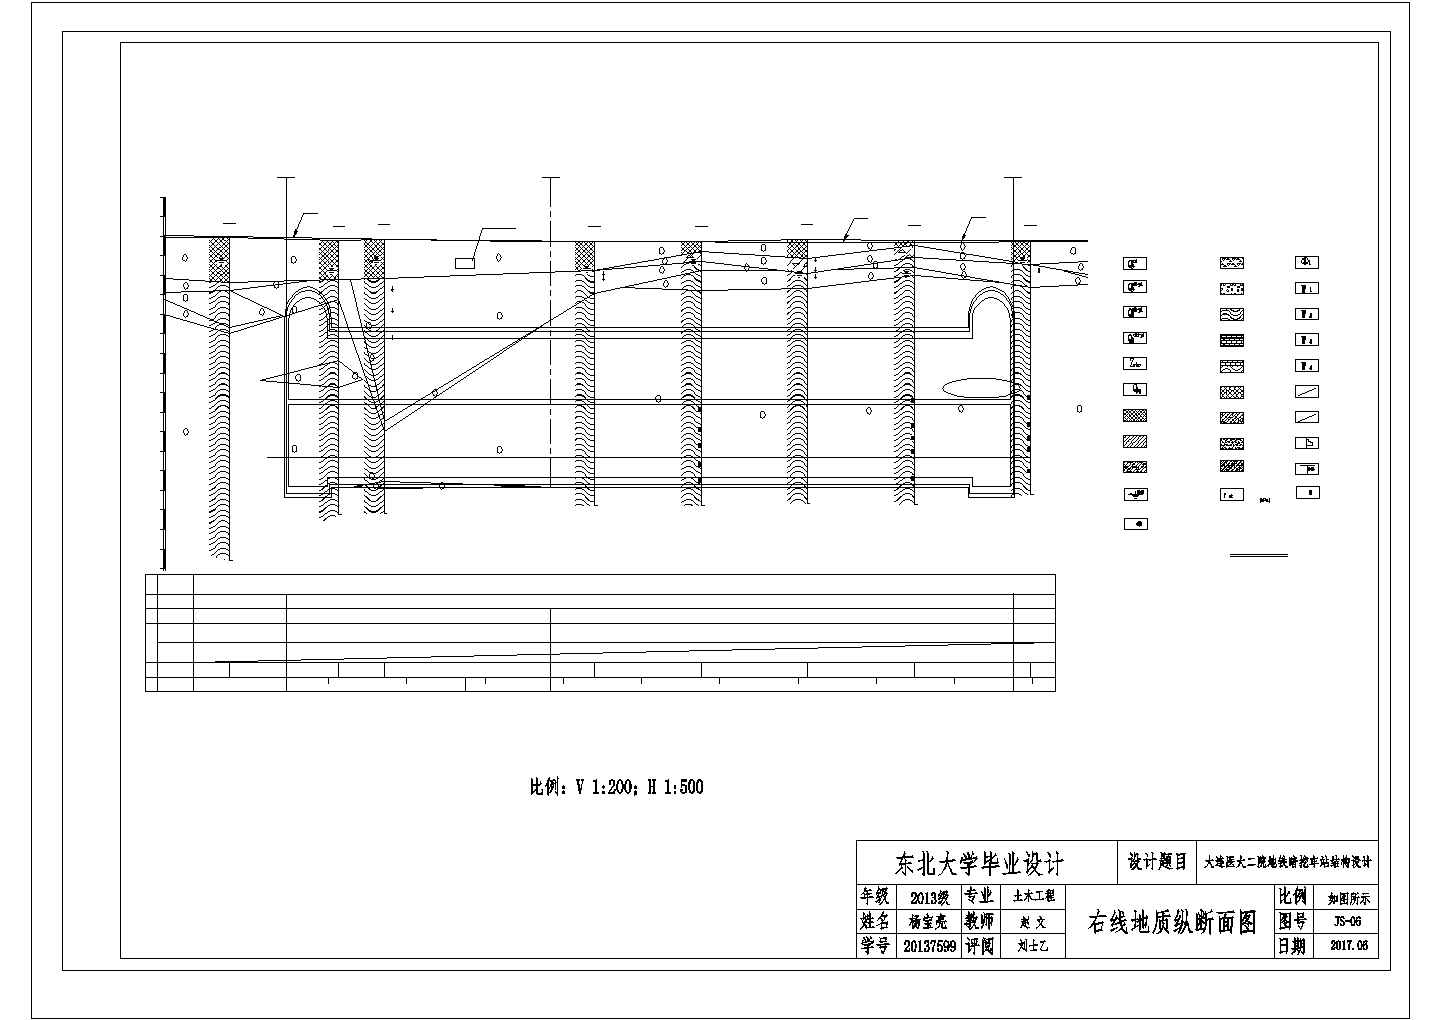 暗挖两层导式站台地铁设计图纸